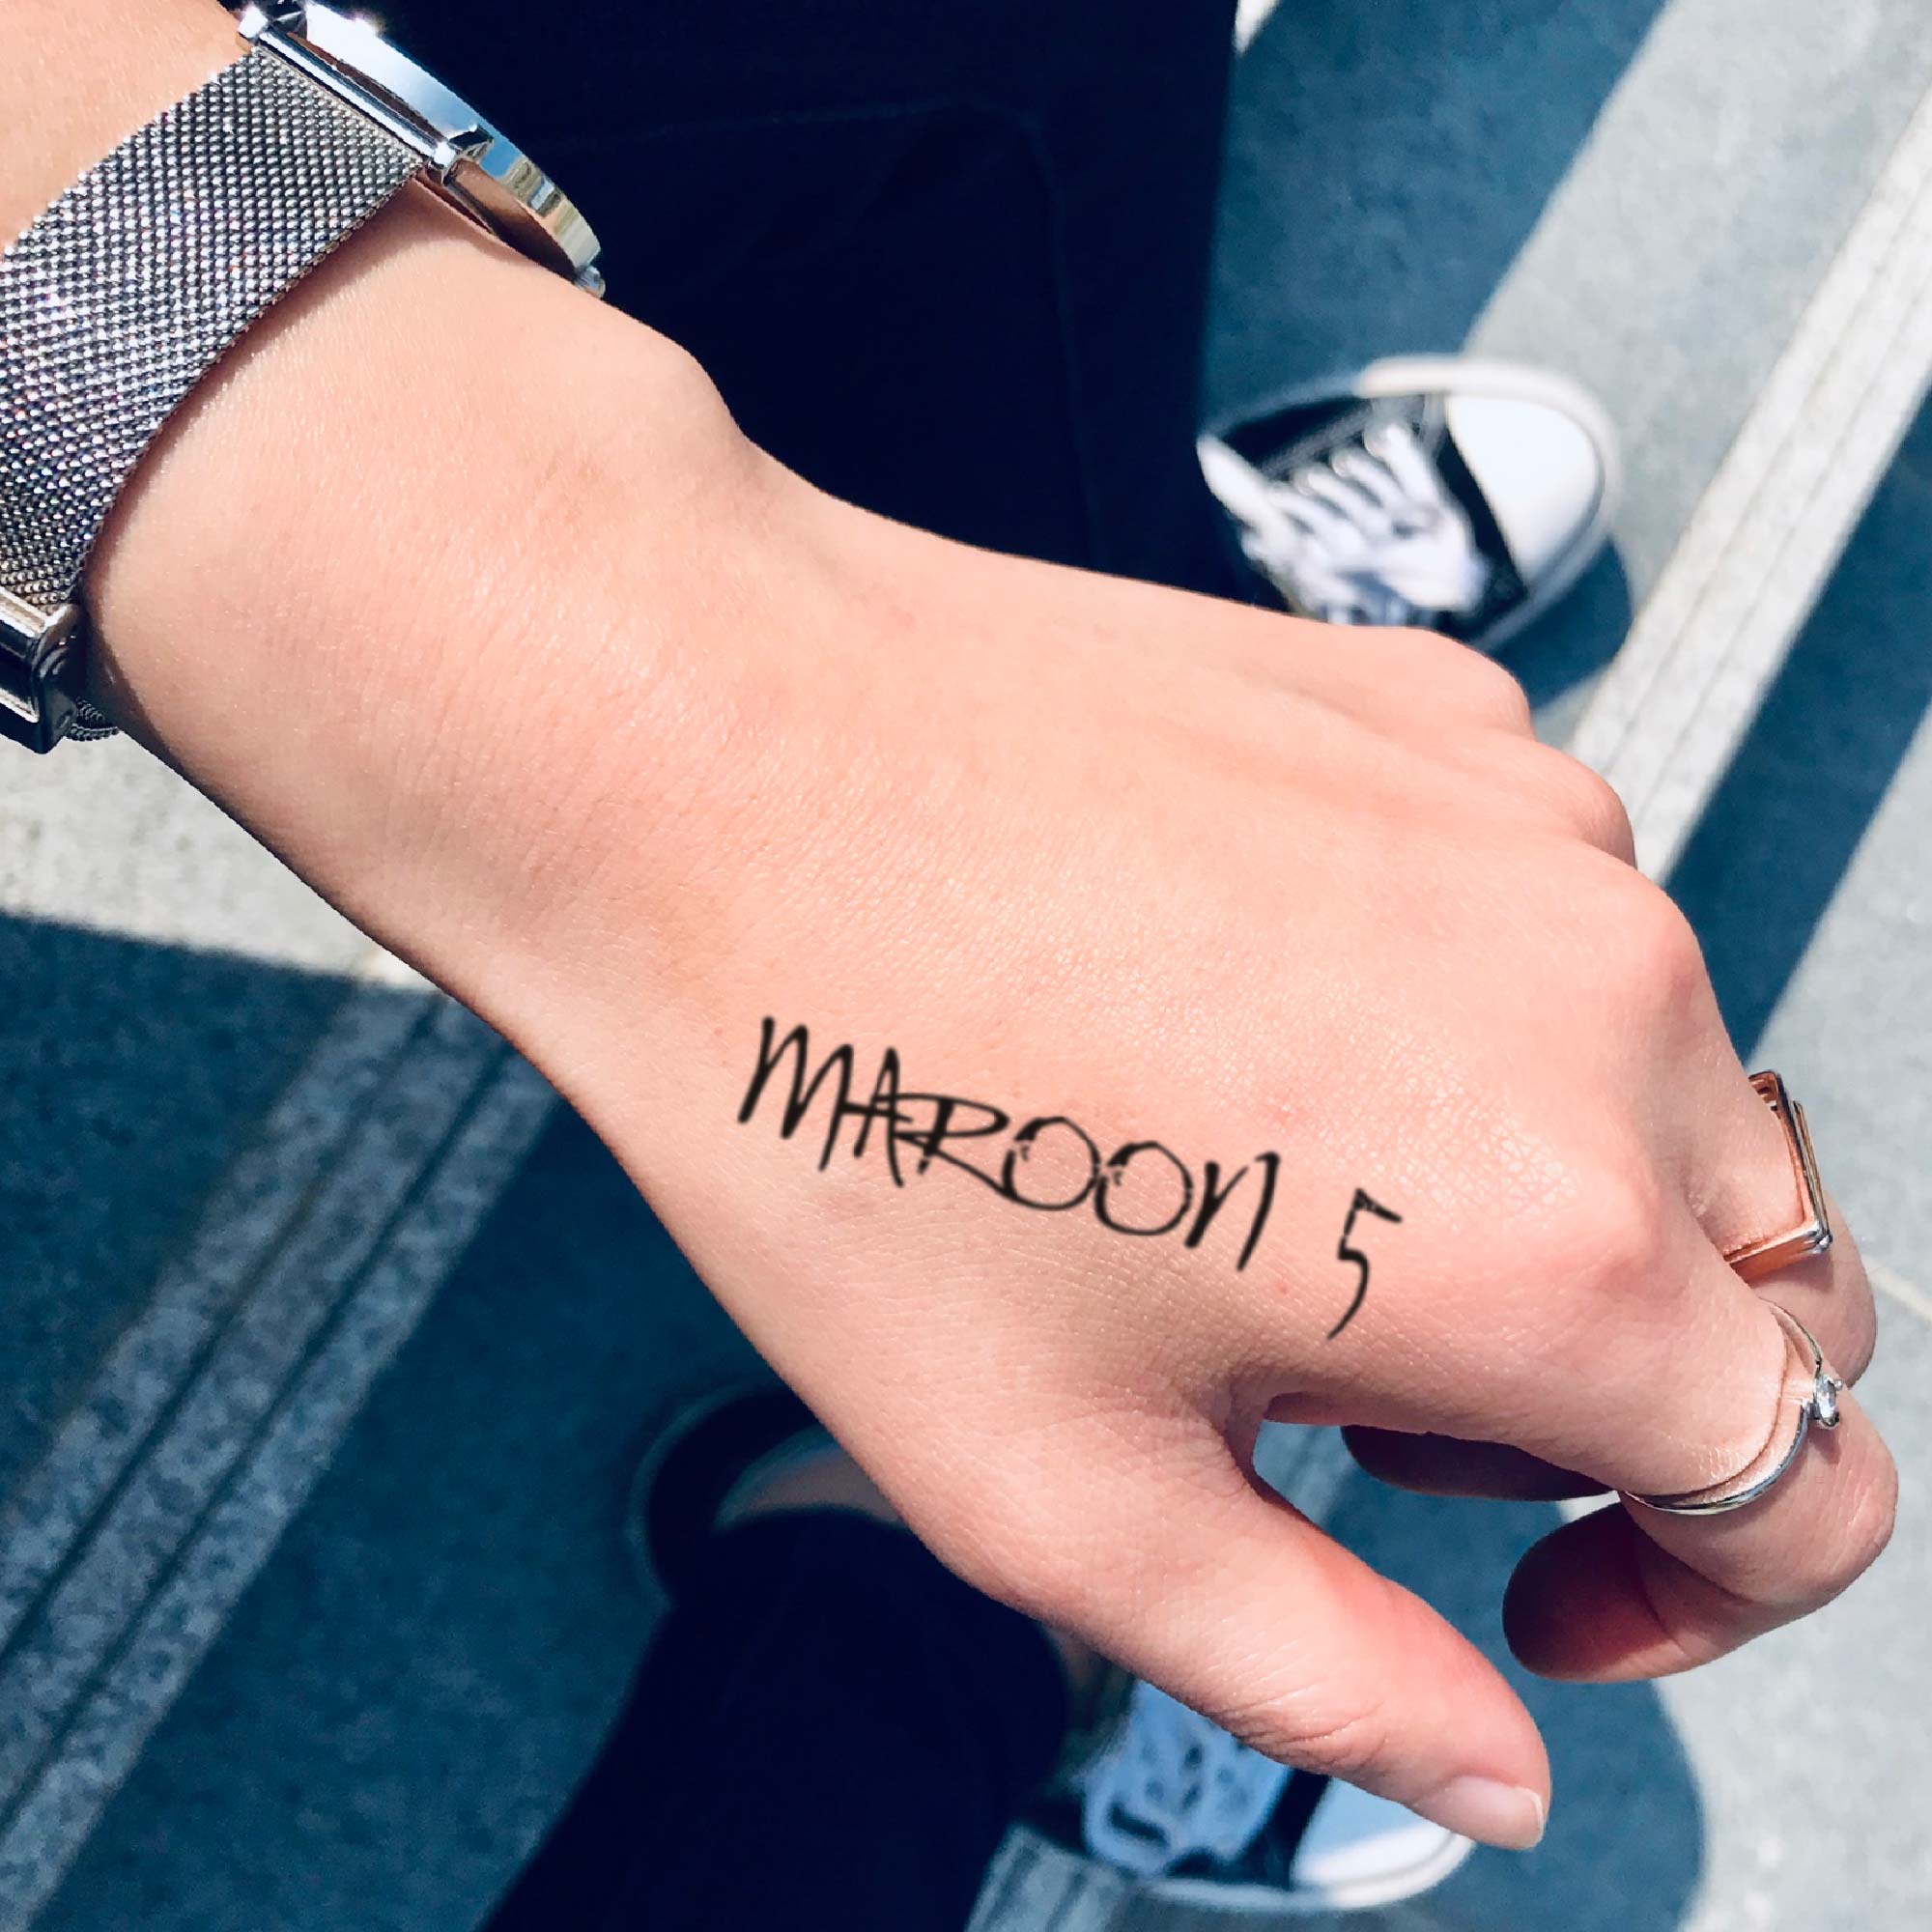 Maroon 5 Tattoo Design Idea  OhMyTat